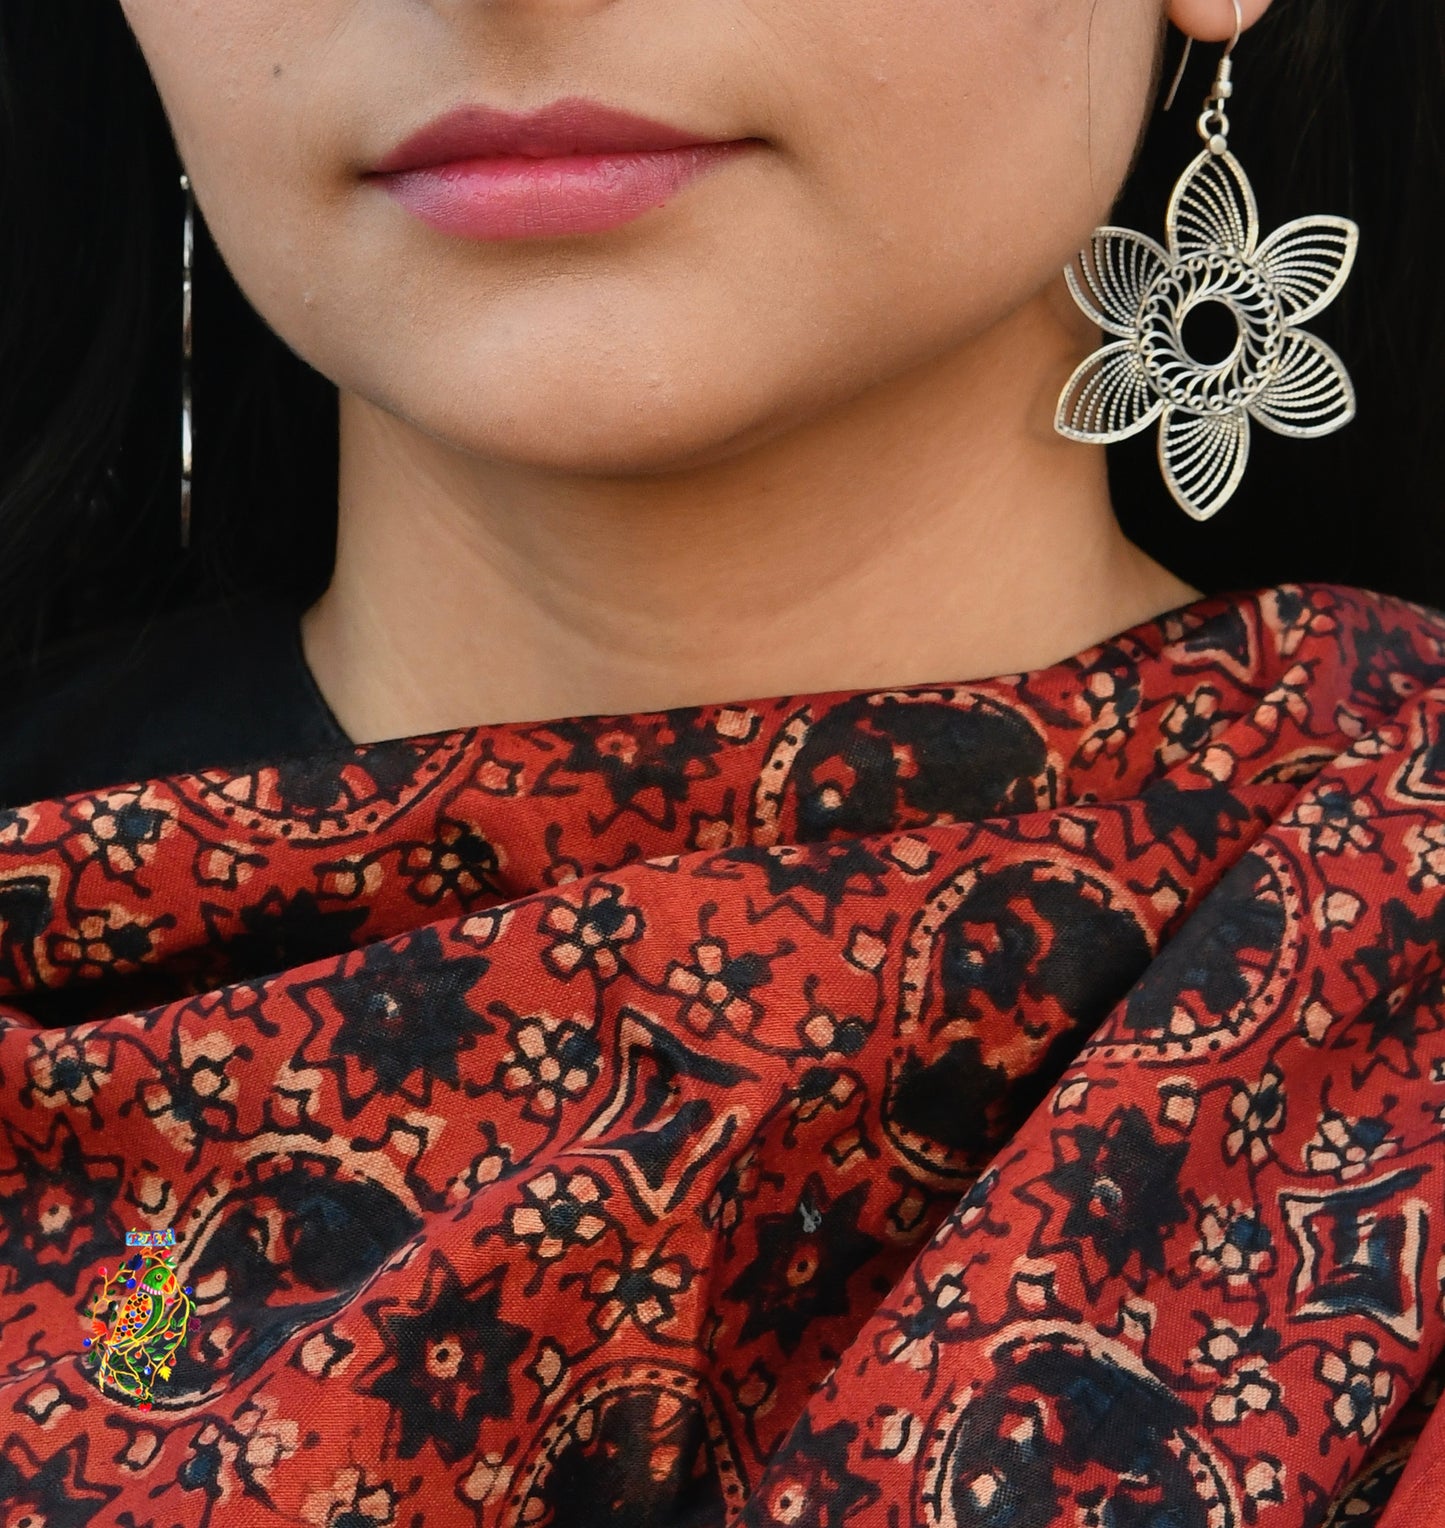 Flower Filigree Earrings